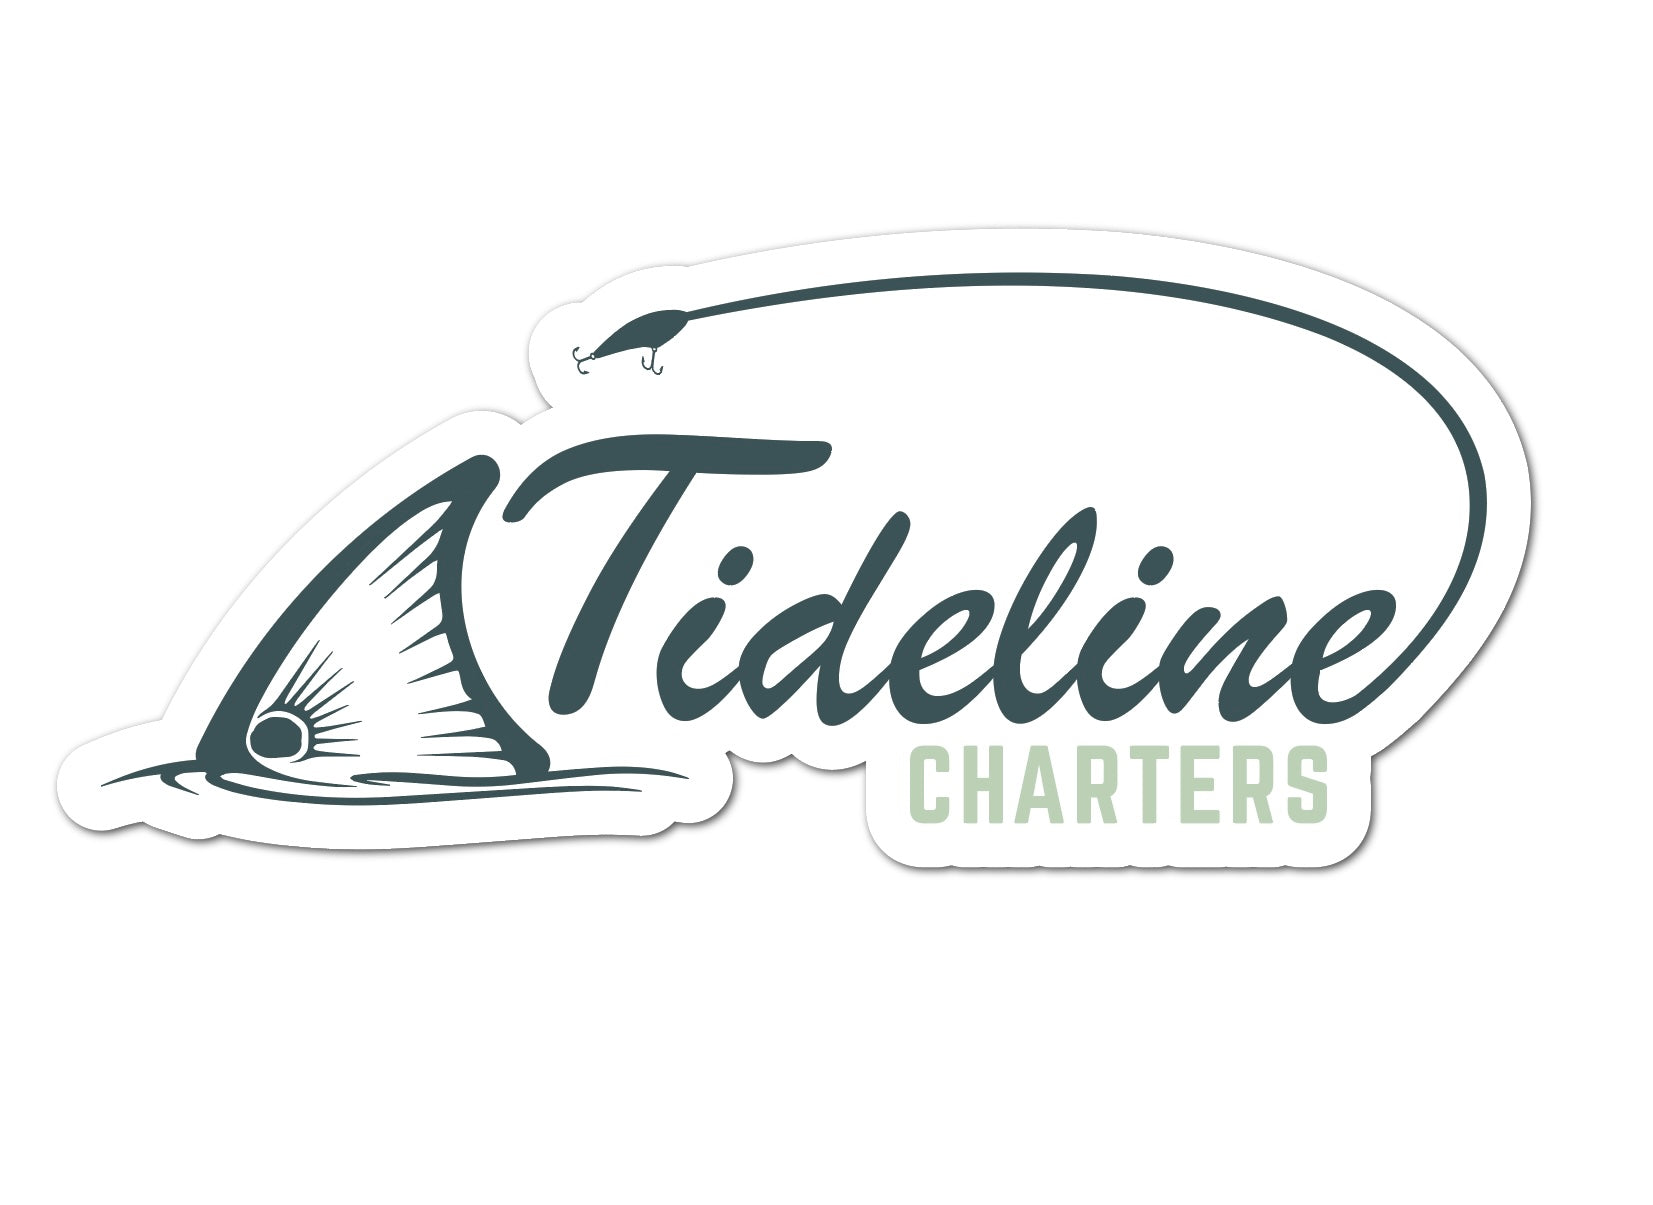 Tideline Charters Sticker